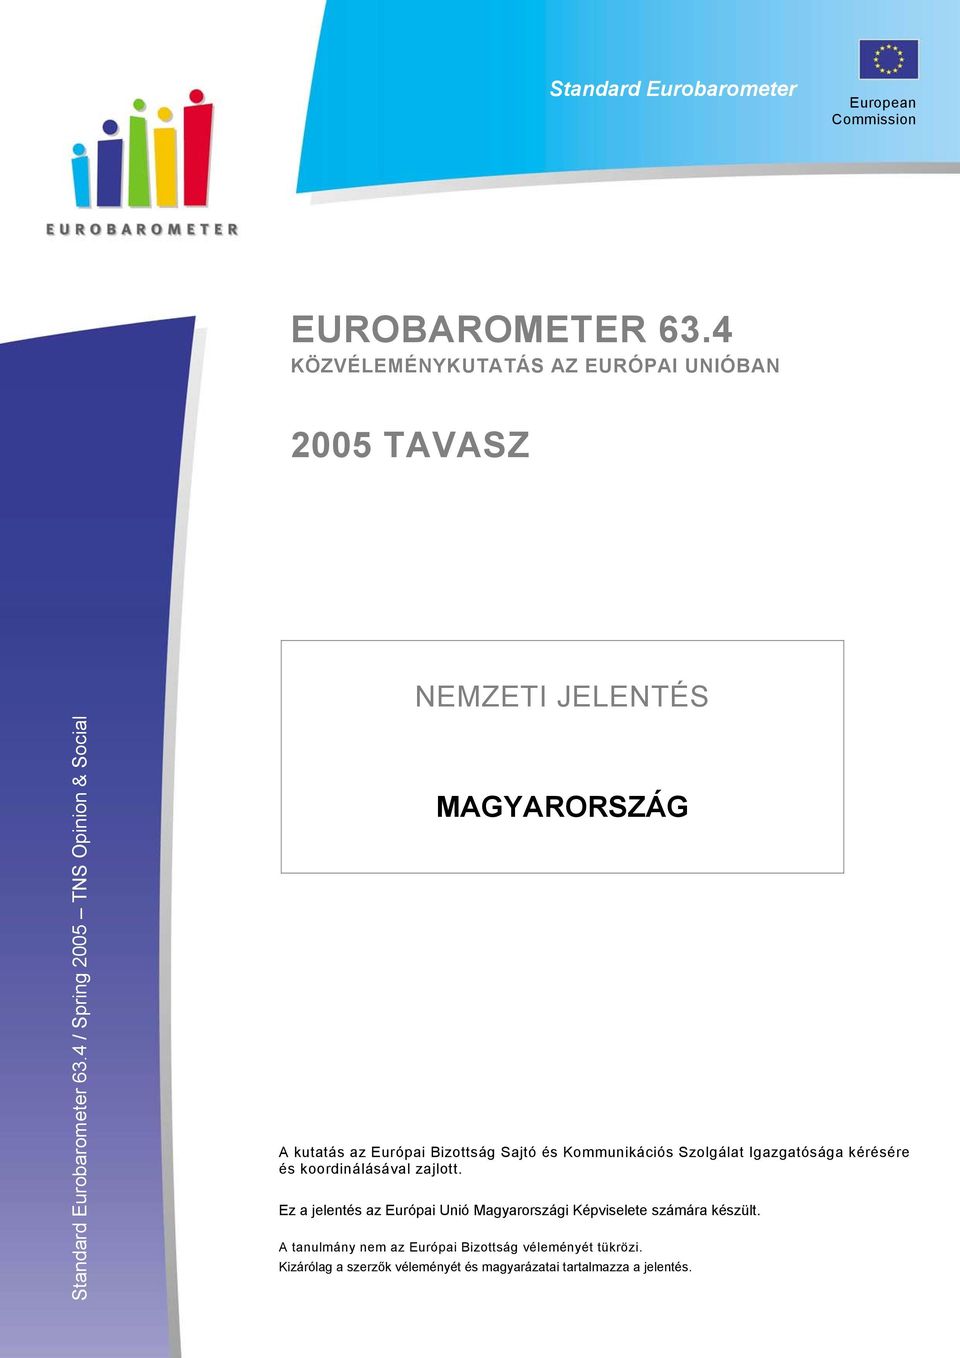 4 / Spring 2005 TNS Opinion & Social NEMZETI JELENTÉS NEMZETI JELENTÉS MAGYARORSZÁG MAGYARORSZÁG A kutatás az Európai Bizottság Sajtó és Kommunikációs Szolgálat Igazgatósága ké és koordinálásával